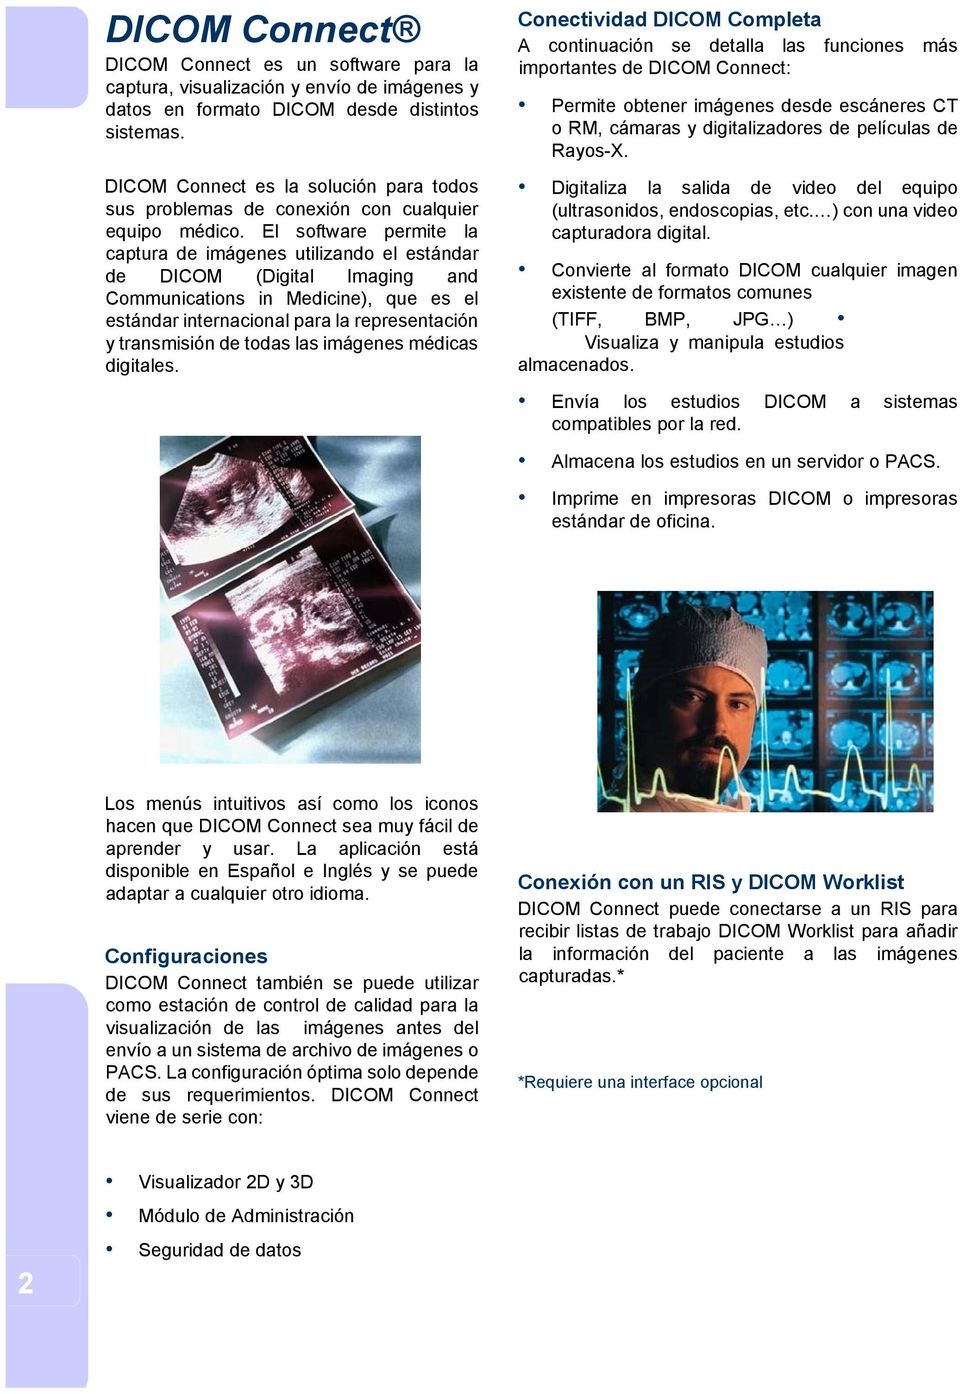 El software permite la captura de imágenes utilizando el estándar de DICOM (Digital Imaging and Communications in Medicine), que es el estándar internacional para la representación y transmisión de